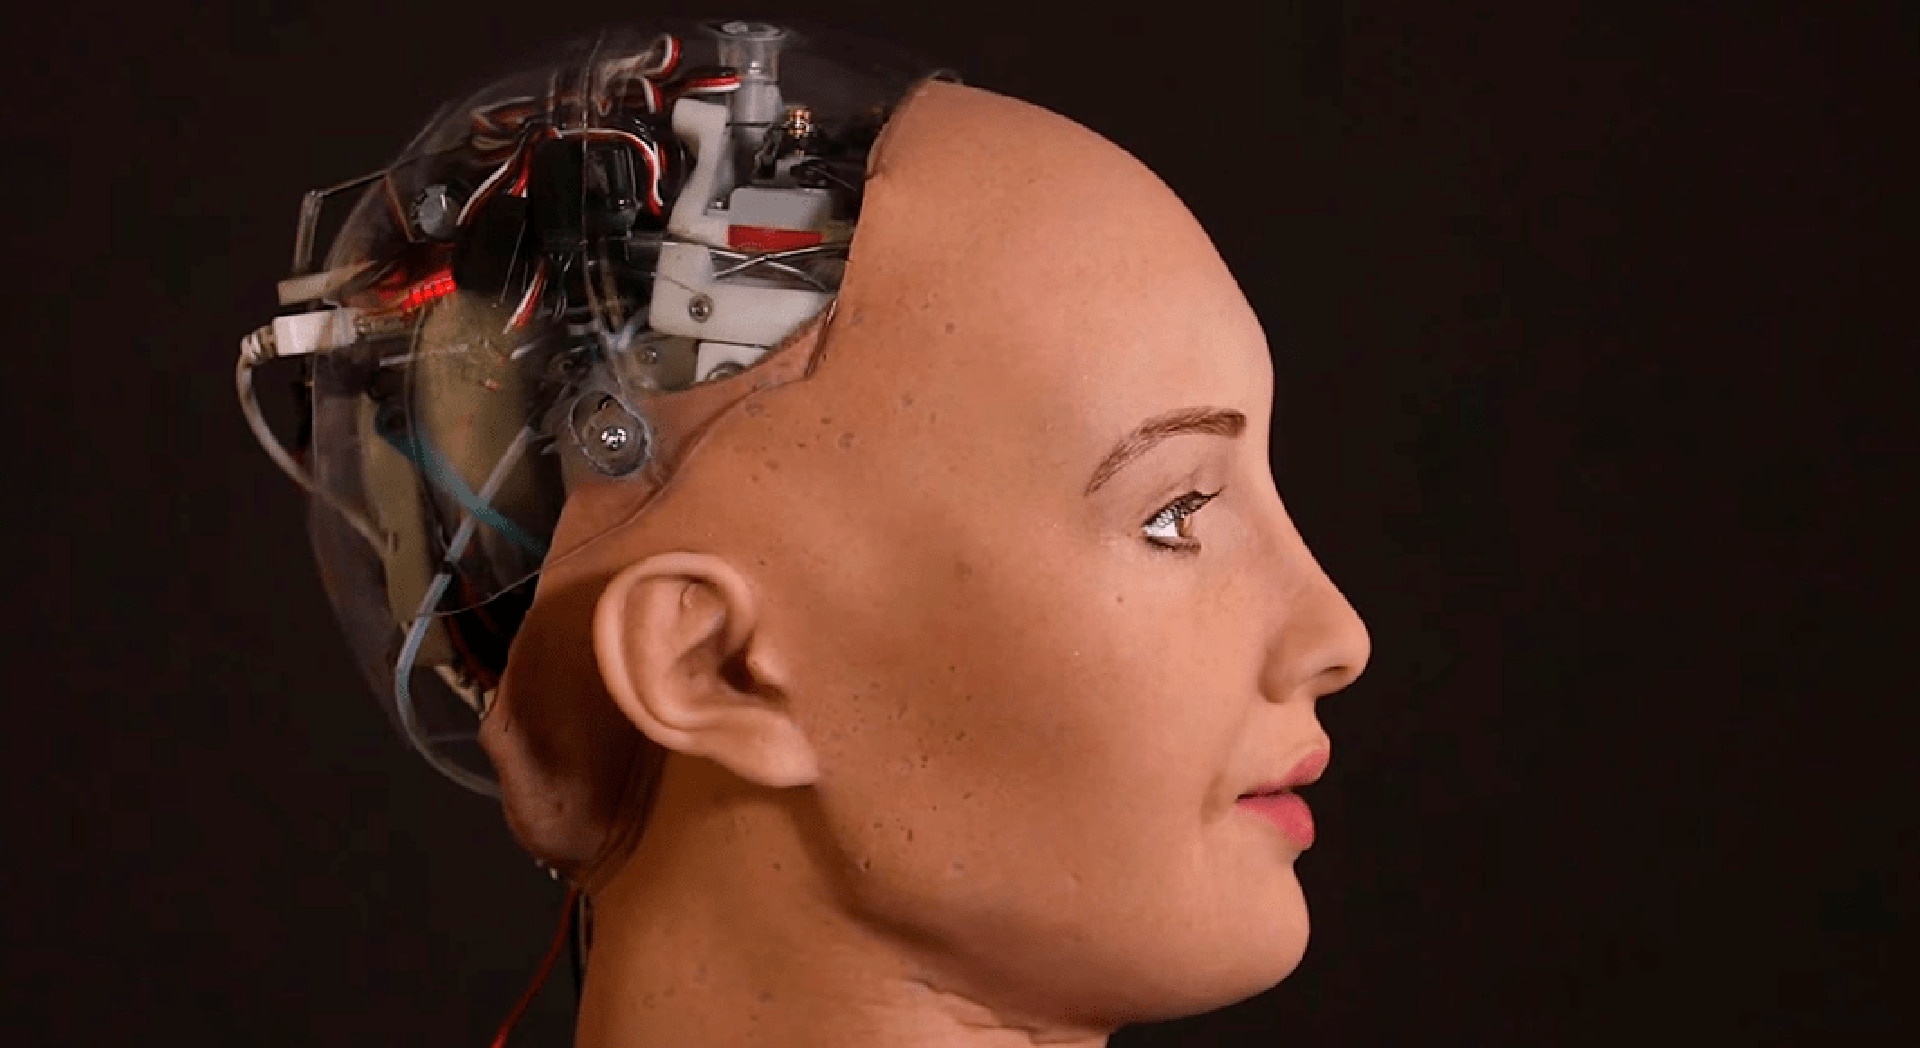 La robótica es una de las industrias que pisa con más fuerza de cara al futuro